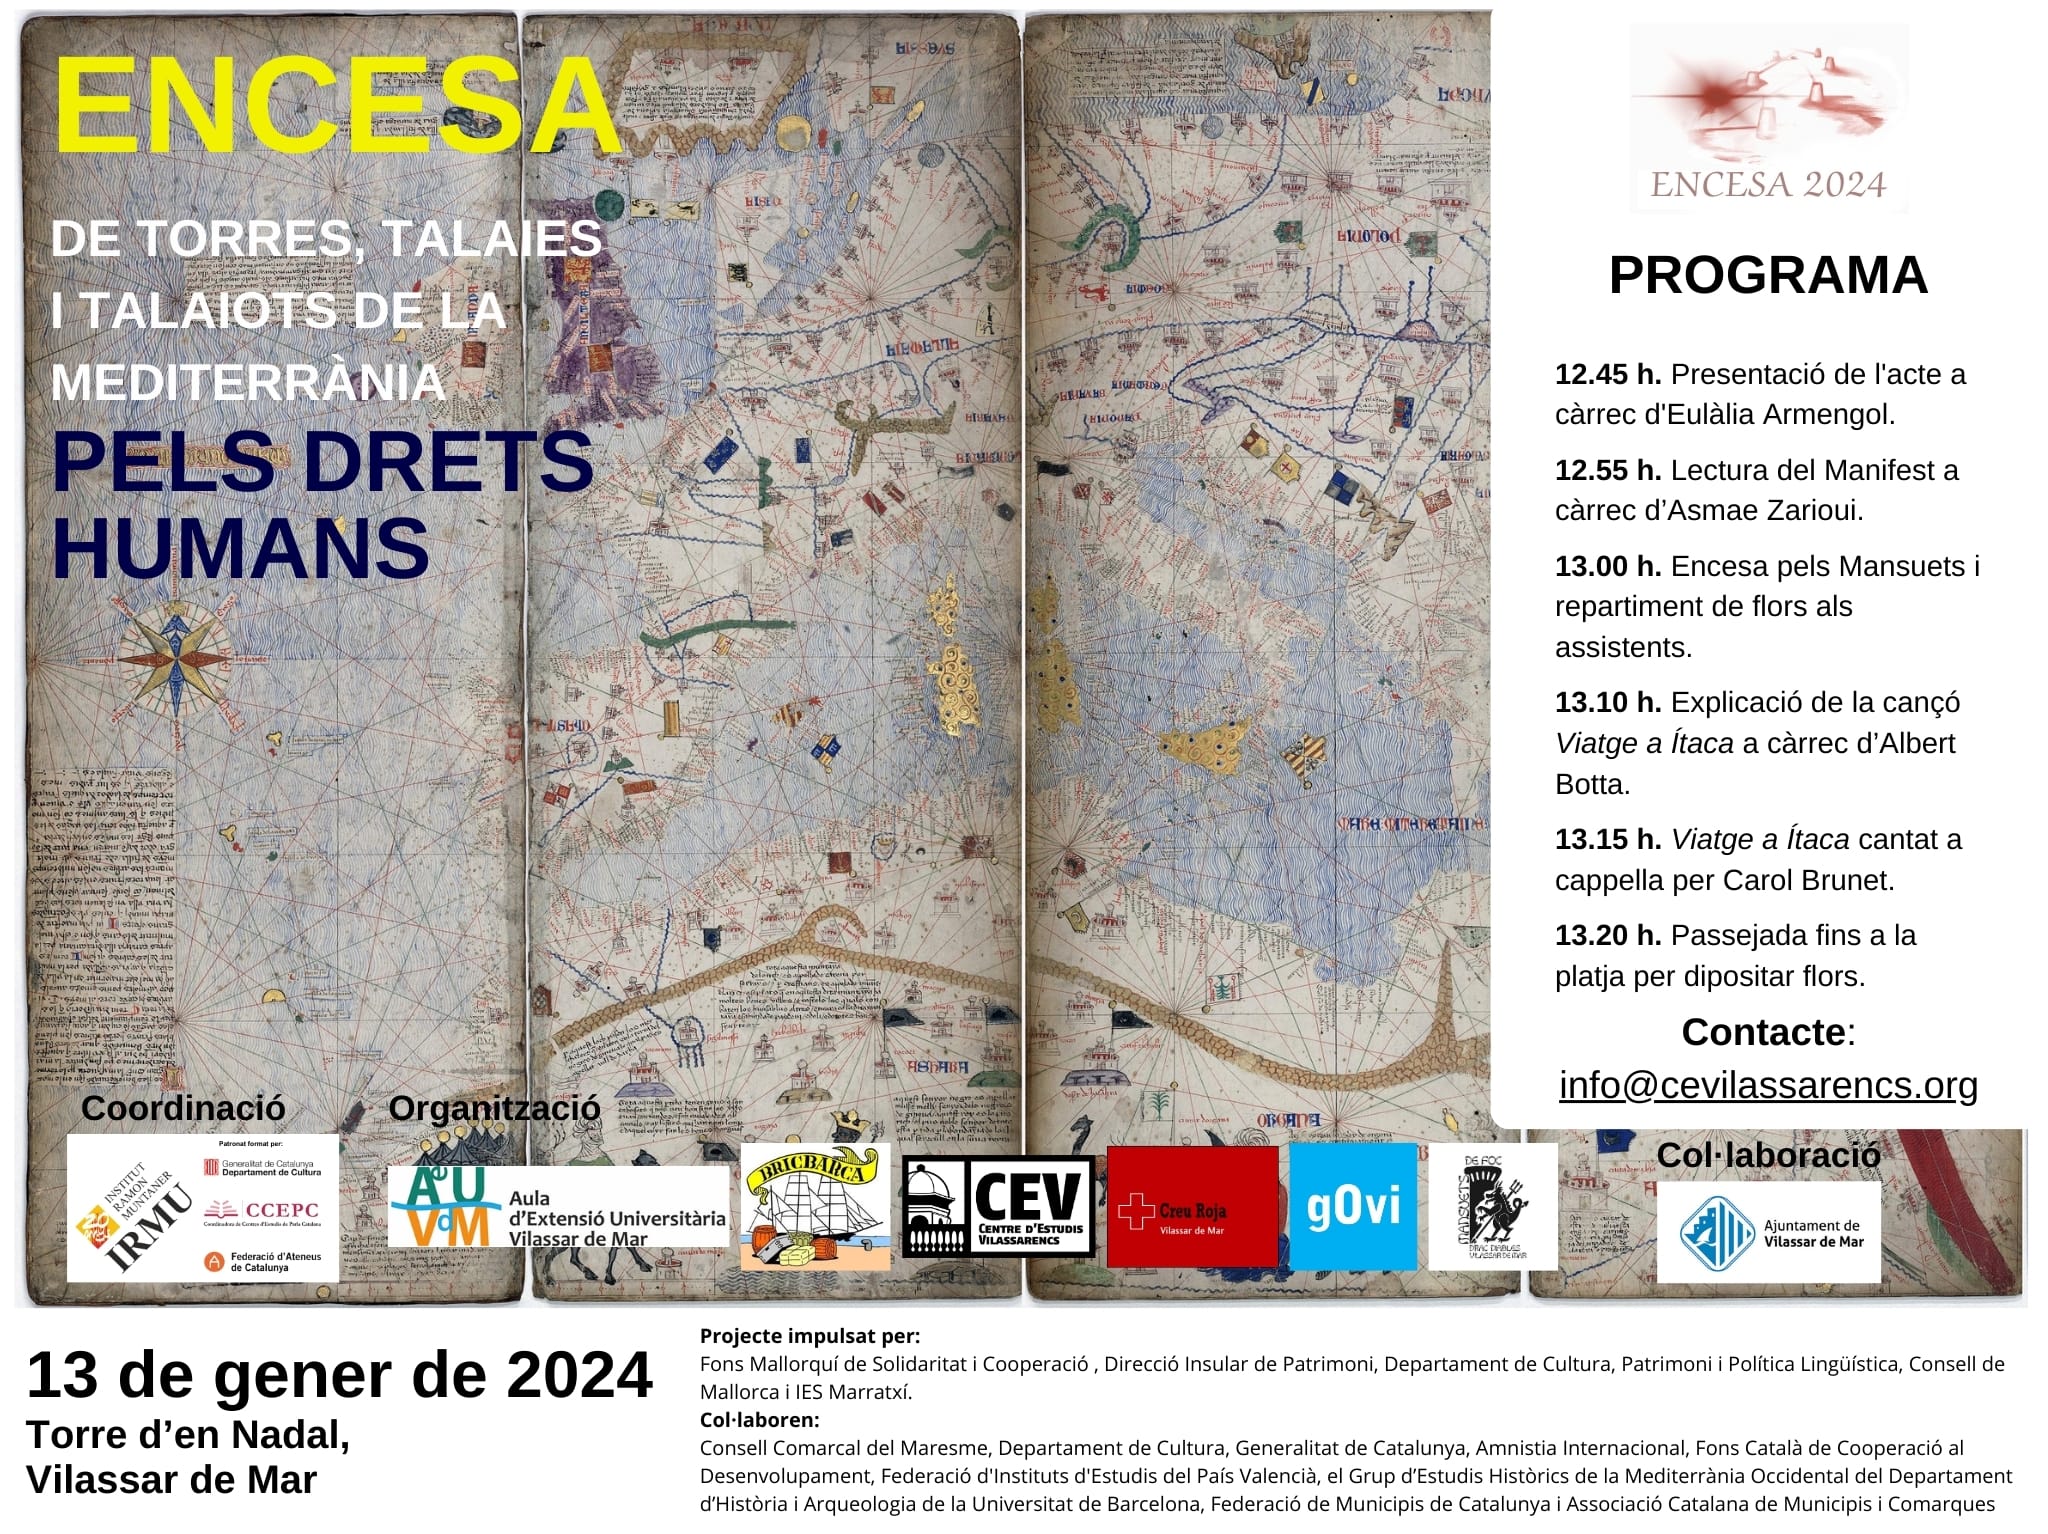 Col·laboració de l’Aula amb l’Encesa de torxes a la mediterrània 2024, per els drets humans